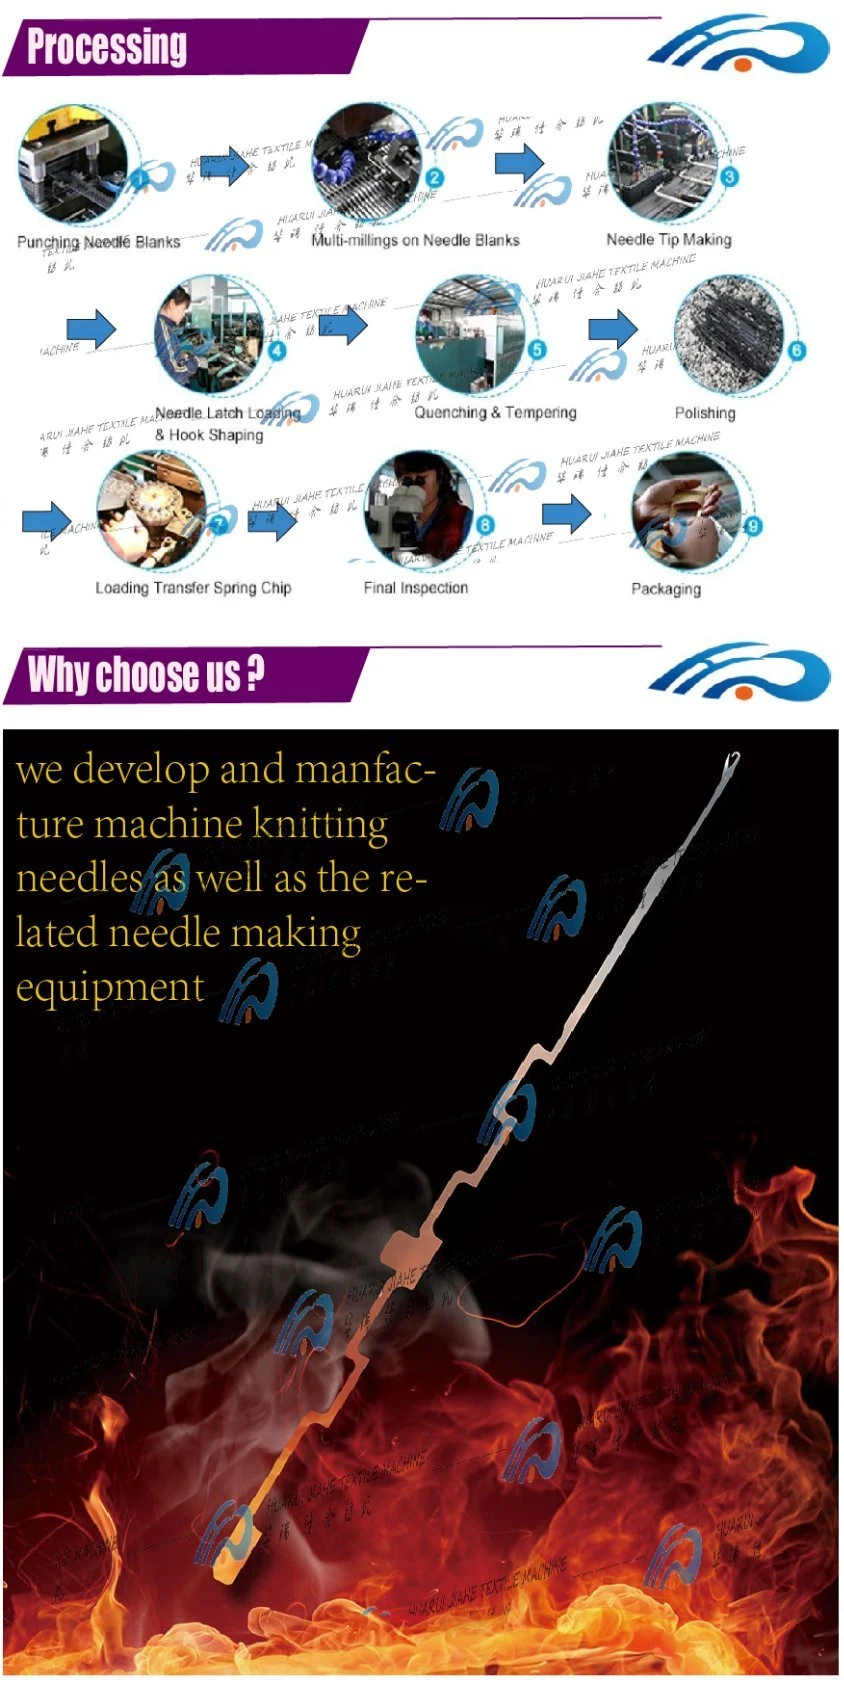 Sewing Needle, Syringe Needle, 8085D Sweater Needle, Sweater Knitting Needle, Jacquard Machine Needles, Sweater Knitting Needle Groz,Sweater Needle Manufacture